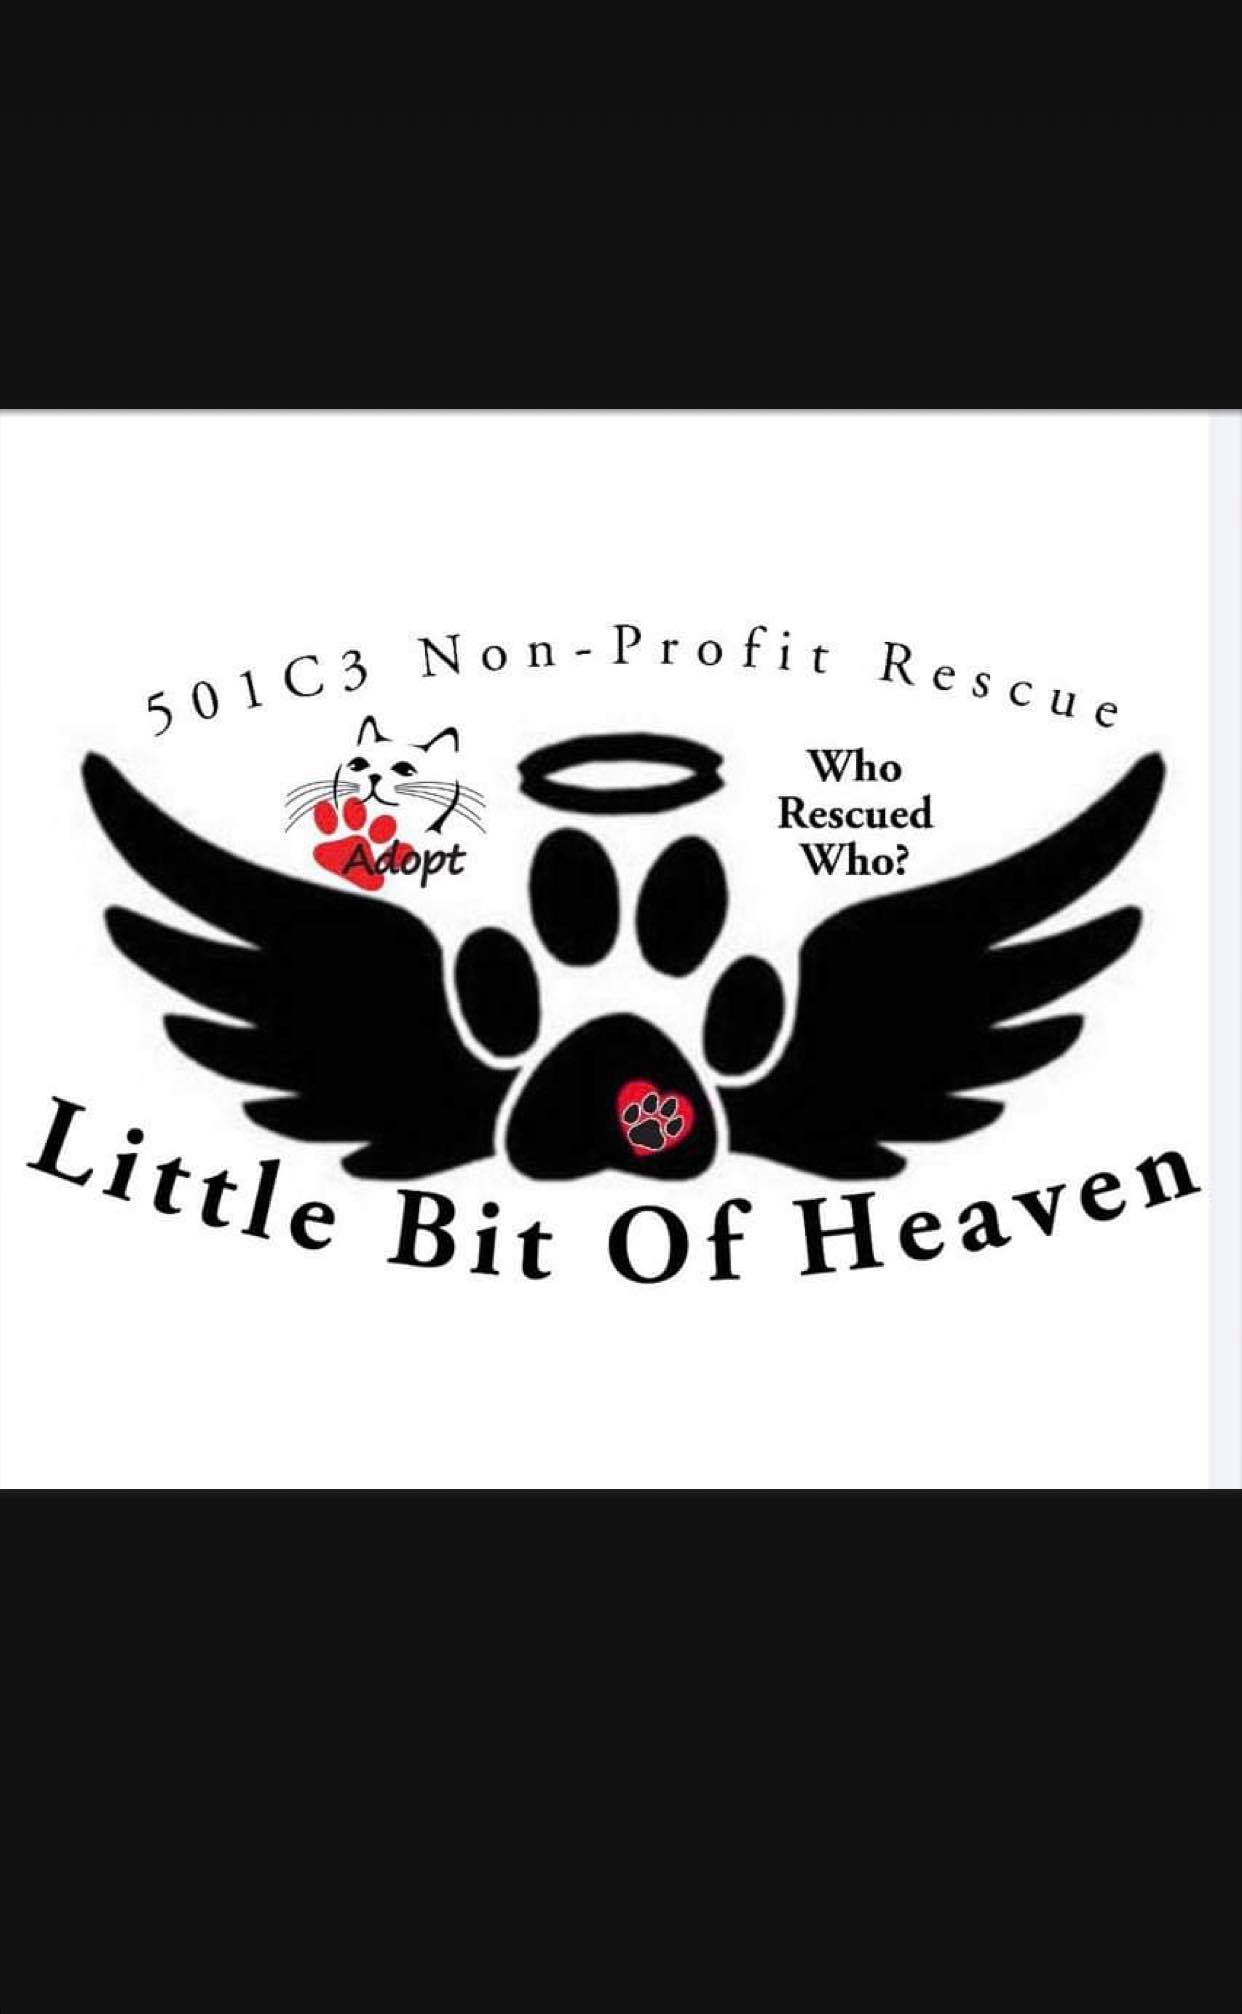 A Little Bit of Heaven Rescue